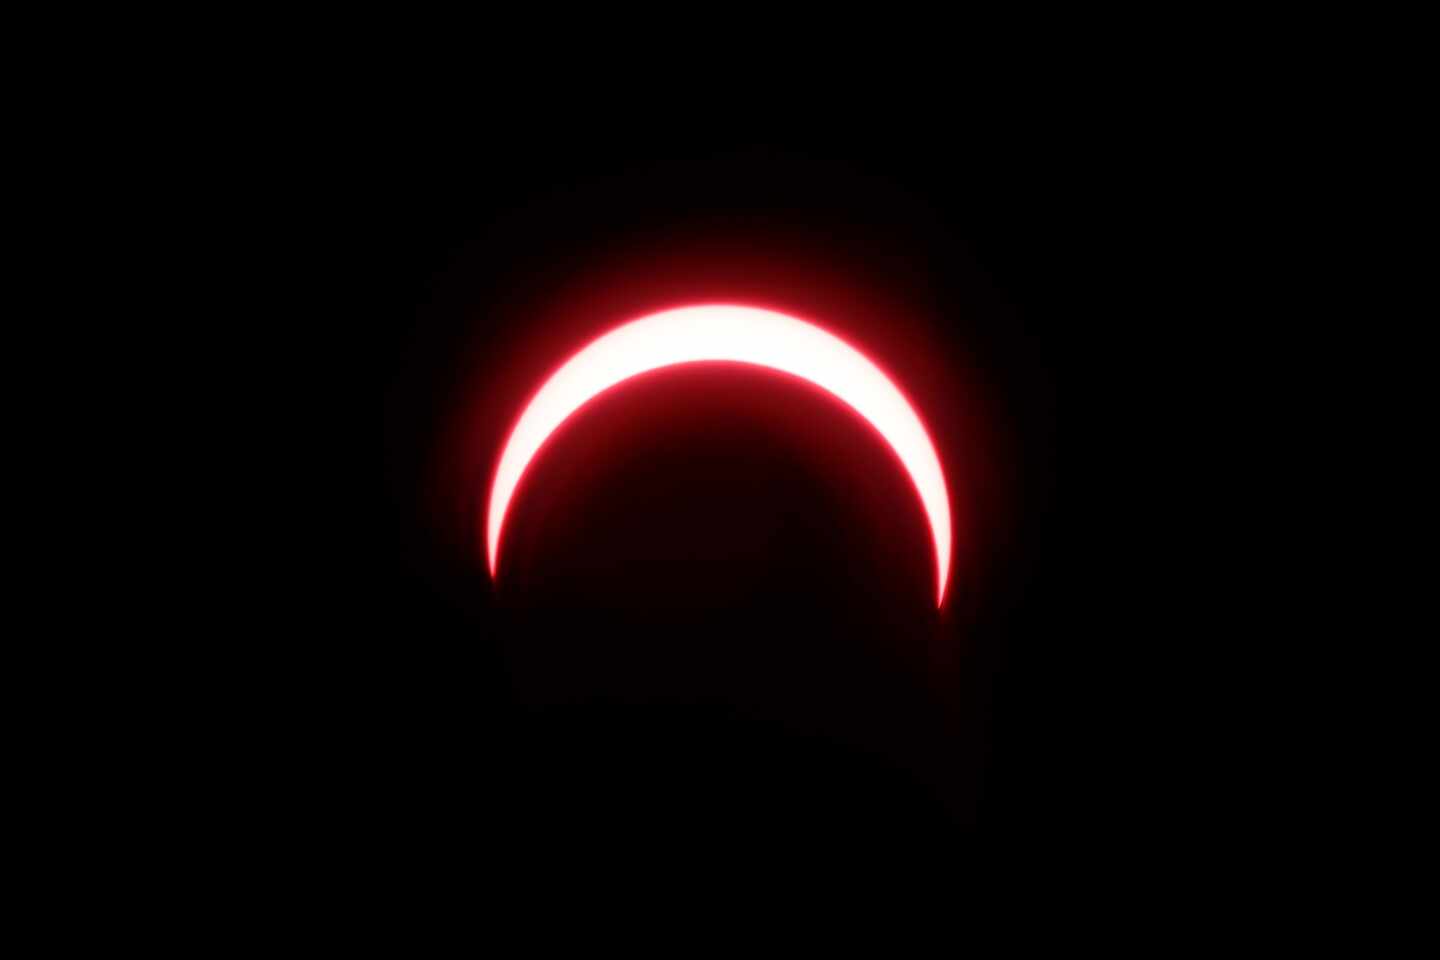 Galería: las espectaculares imágenes del último eclipse solar de la década